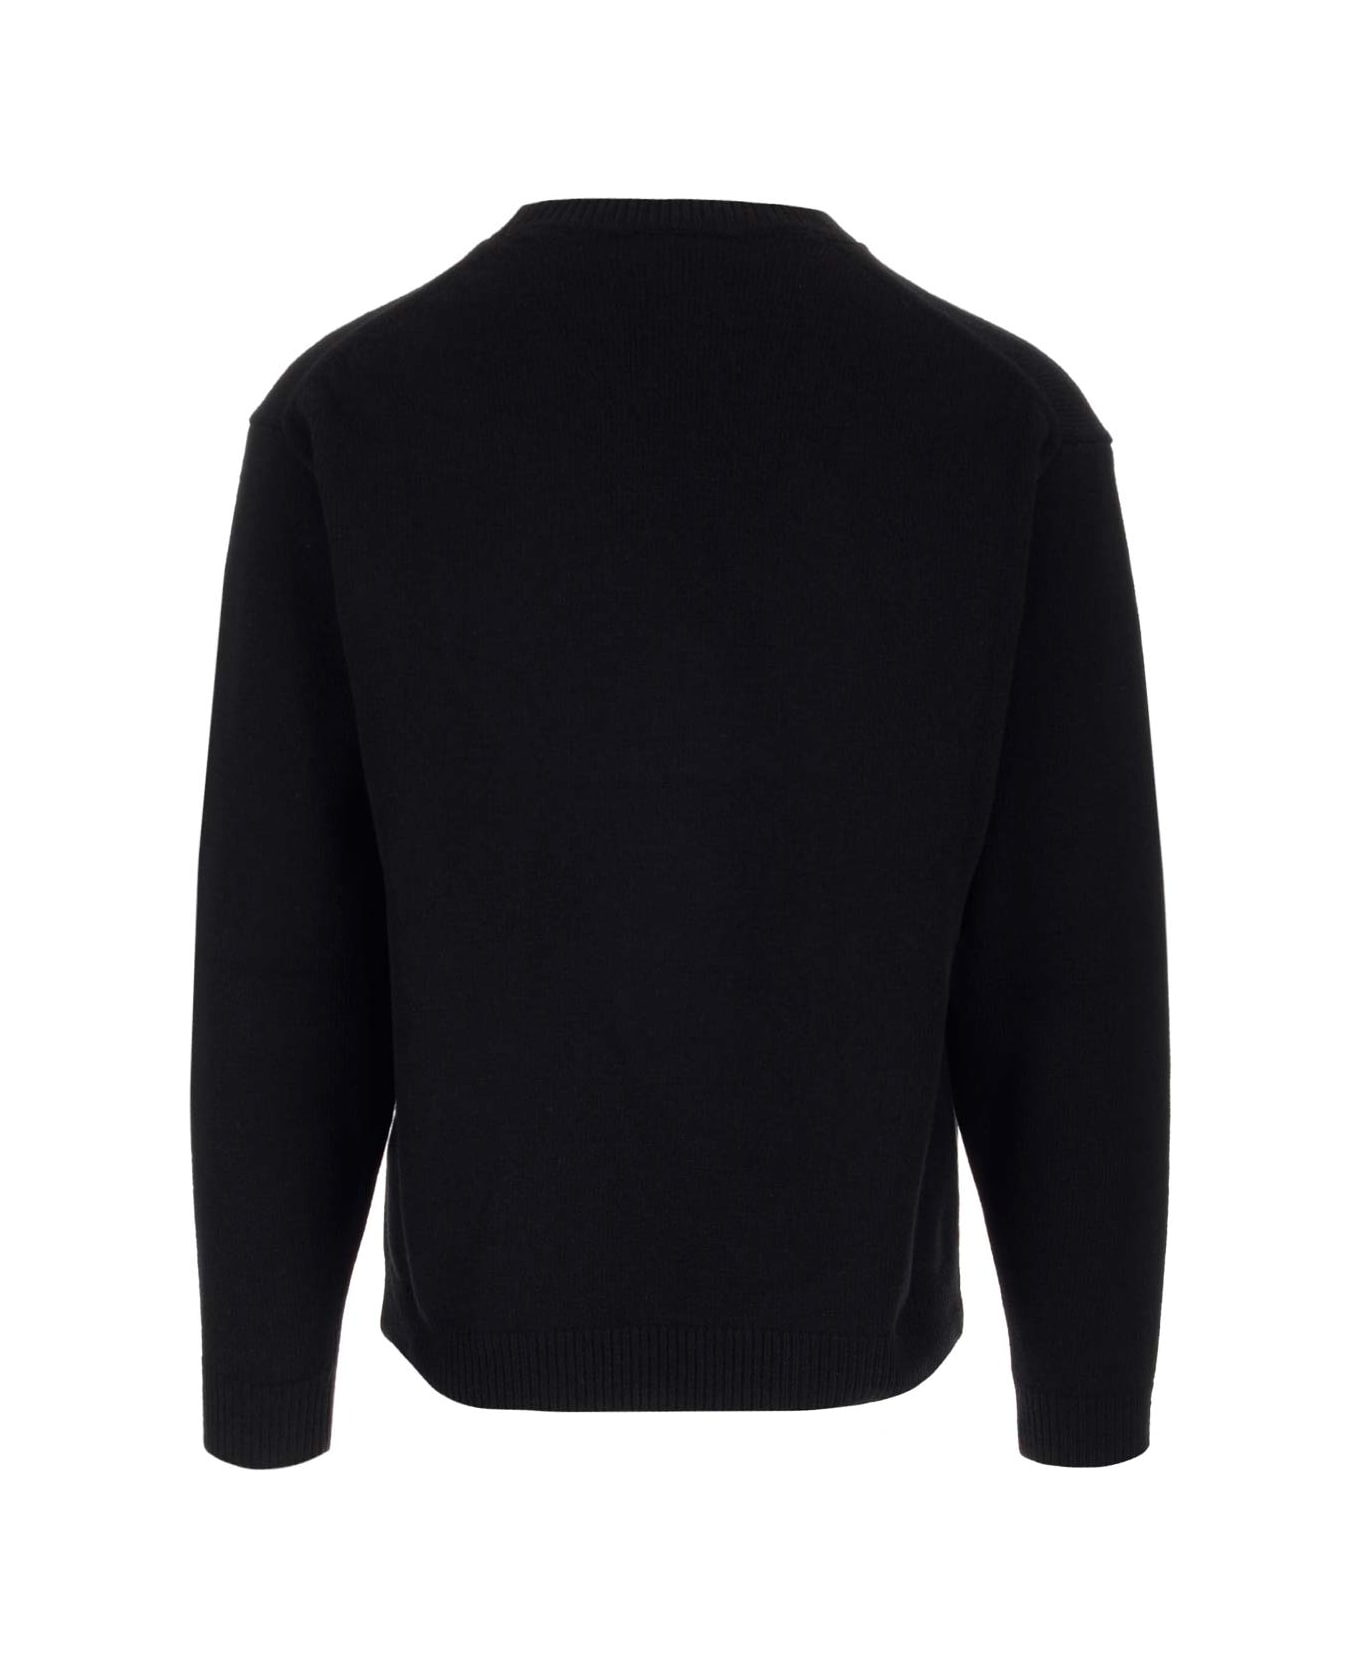 Kenzo Black 'boke Flower' Sweater - Black